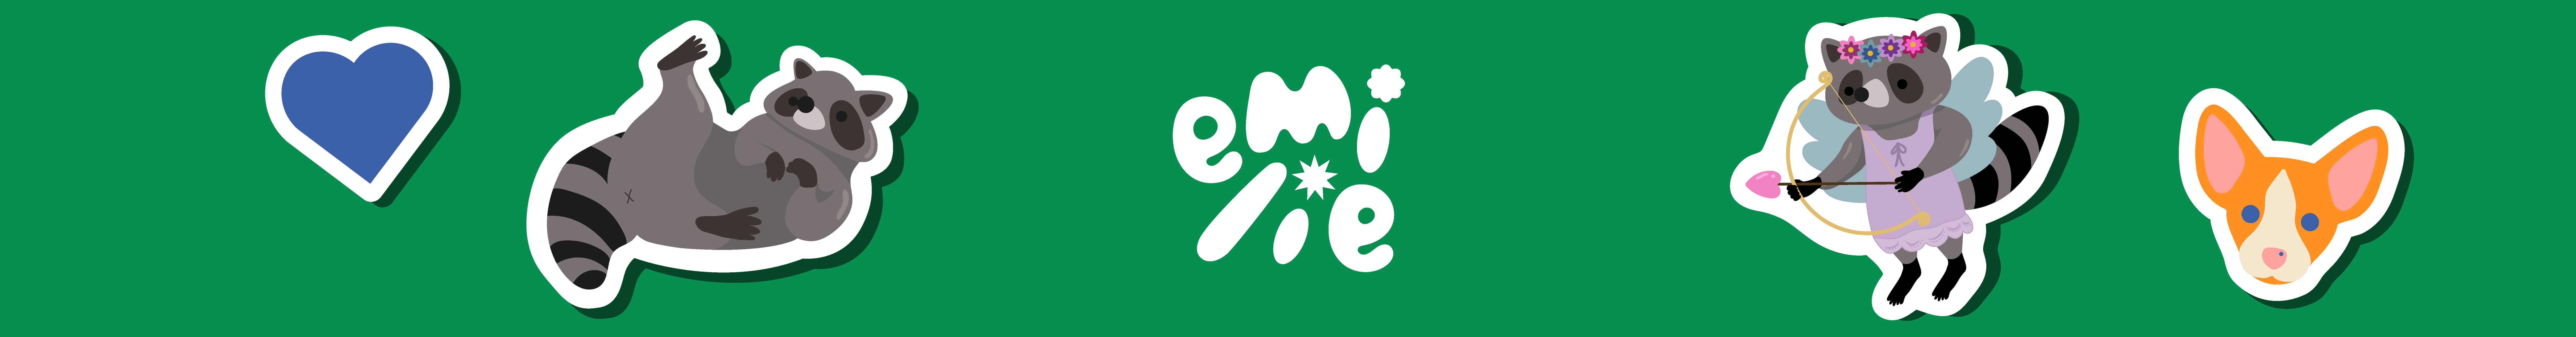 Émilie Lavertue's profile banner